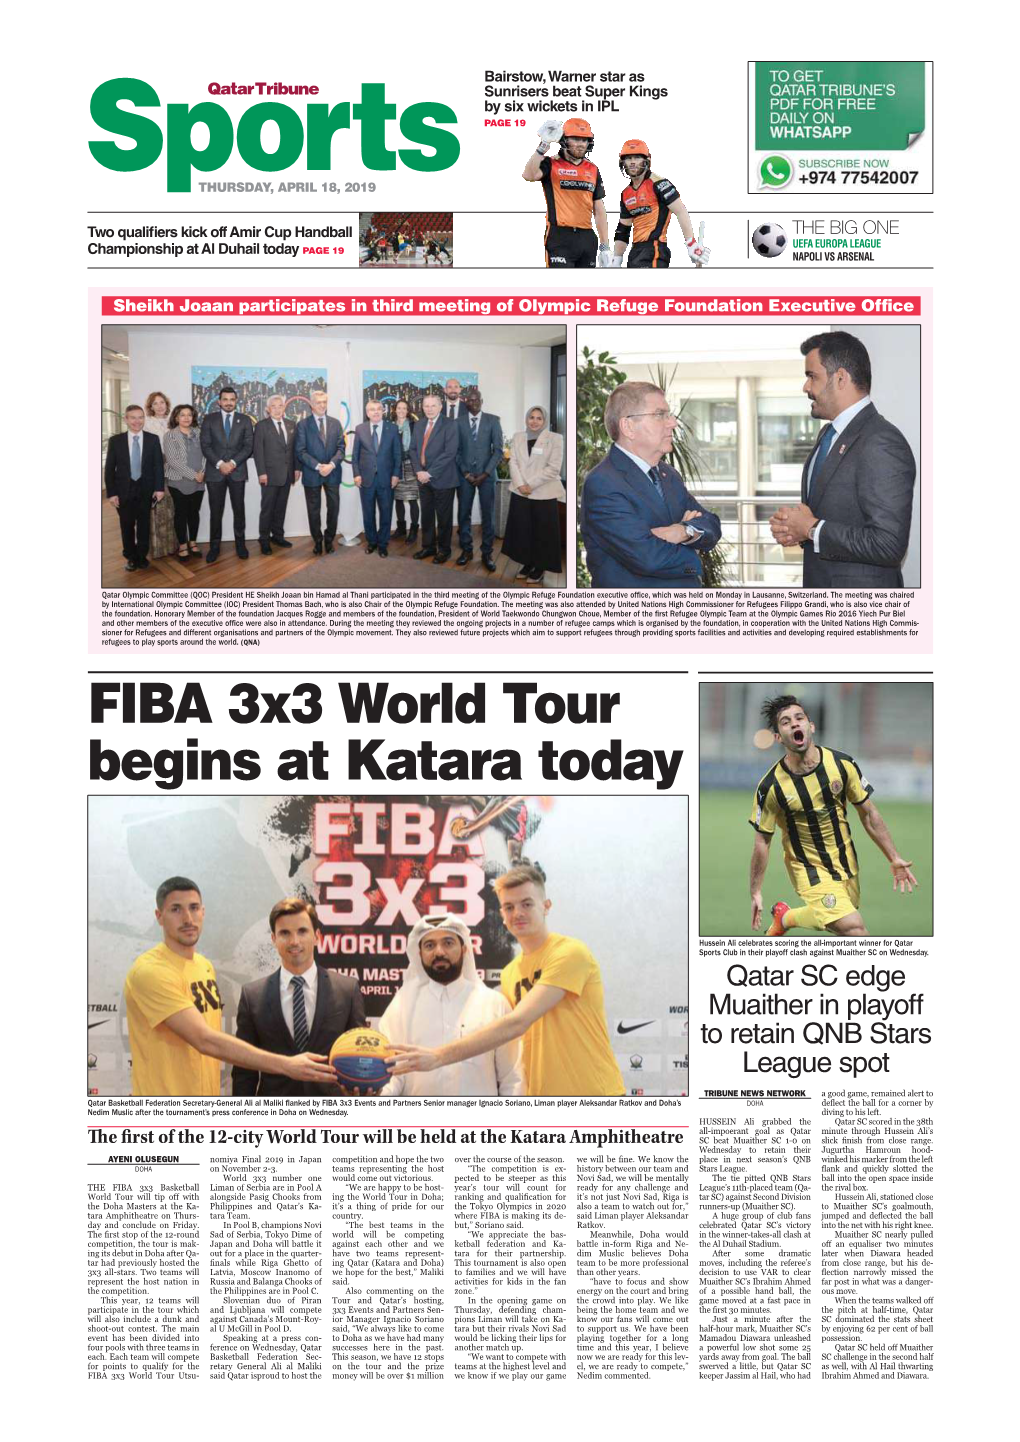 FIBA 3X3 World Tour Begins at Katara Today